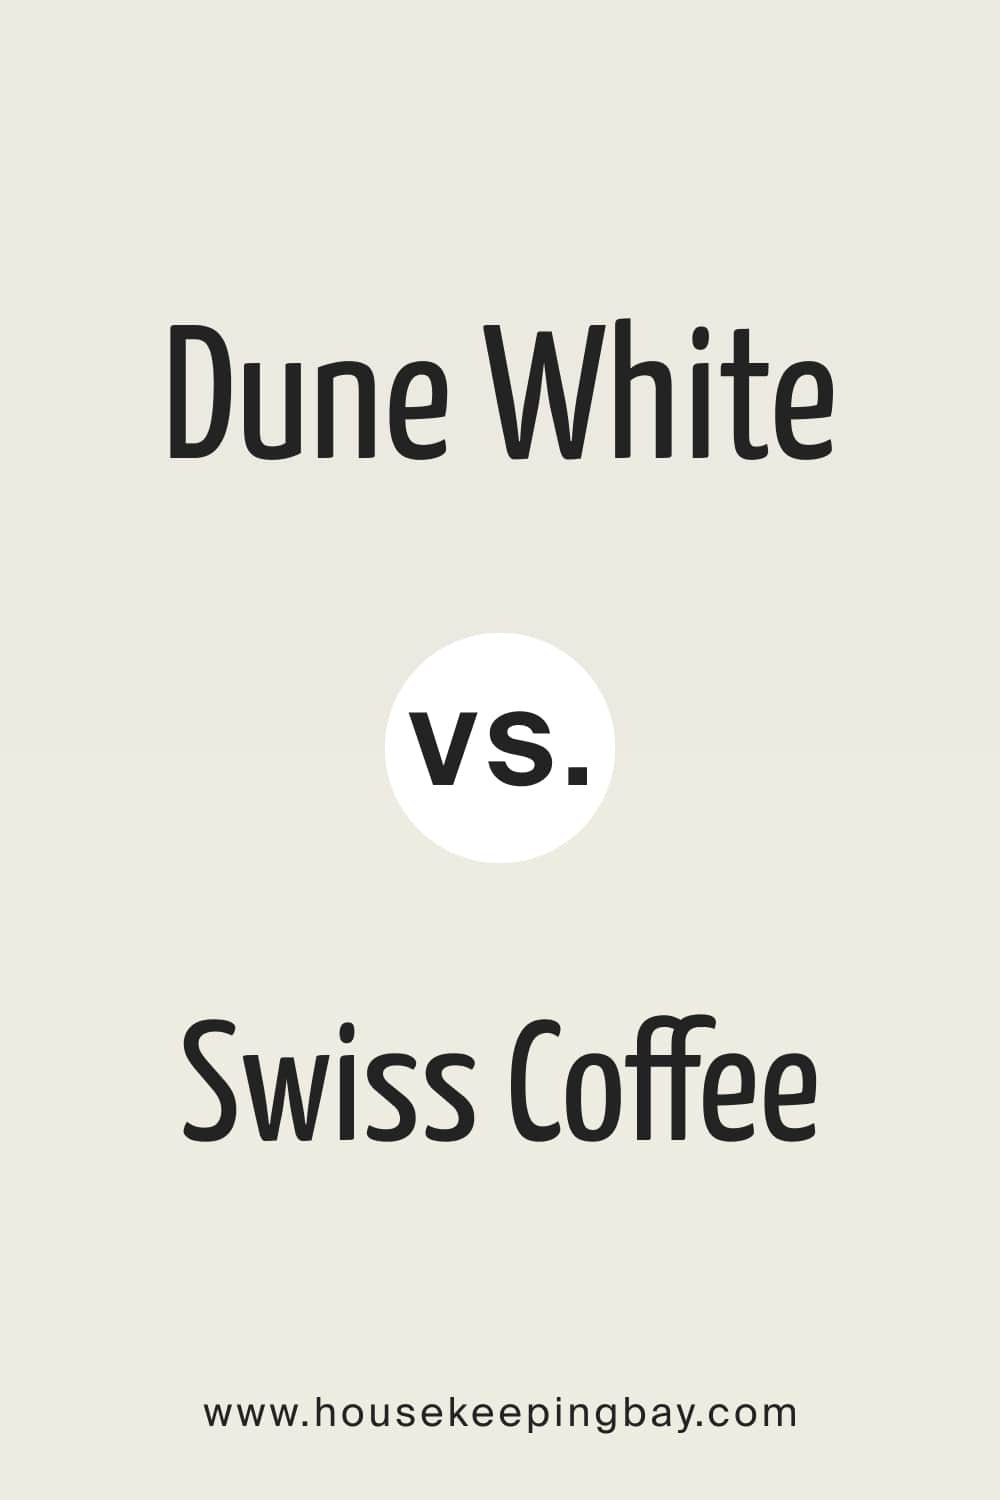 Dune White vs Swiss Coffee